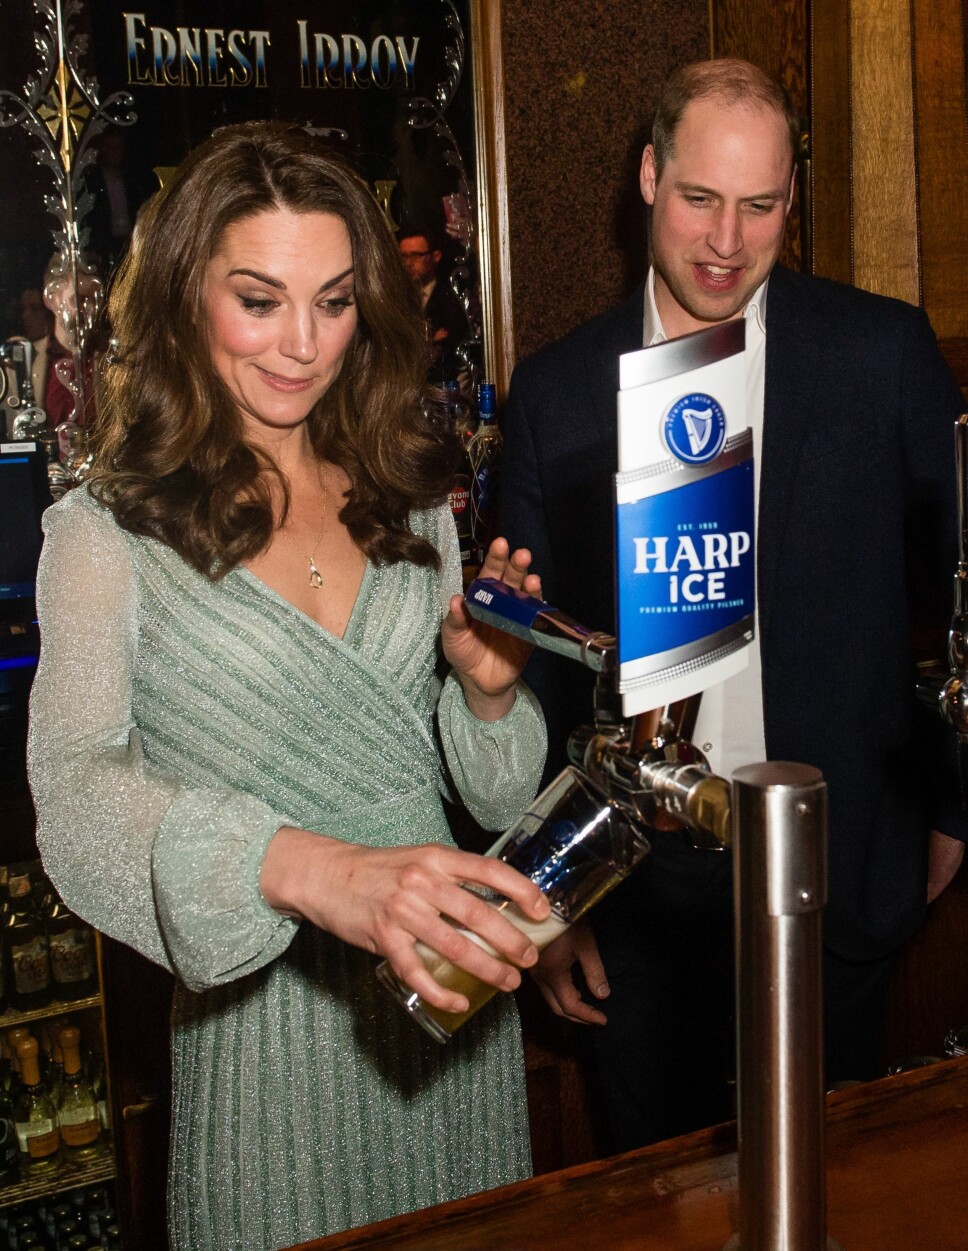 KLARTE SEG BRA: Hertuginne Kate fikk prøve seg på noe vi tror hun ikke har gjort så mye tidligere - nemlig tappe øl. Hertuginnen så ut til å ha full styring.